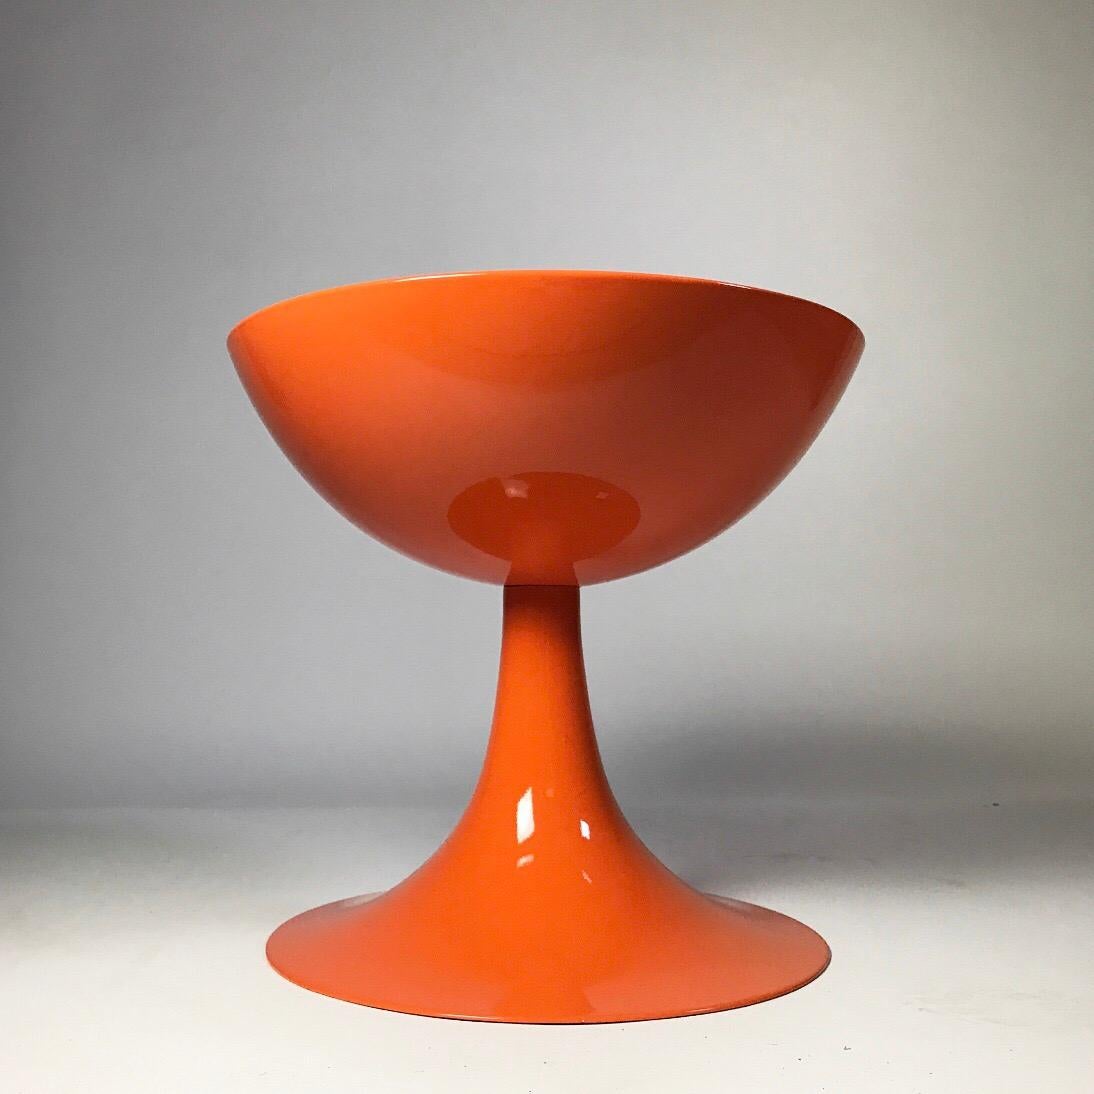 Danish Rare Orange Design Stool by Nanna Ditzel for Domus Danica, Denmark, 1969